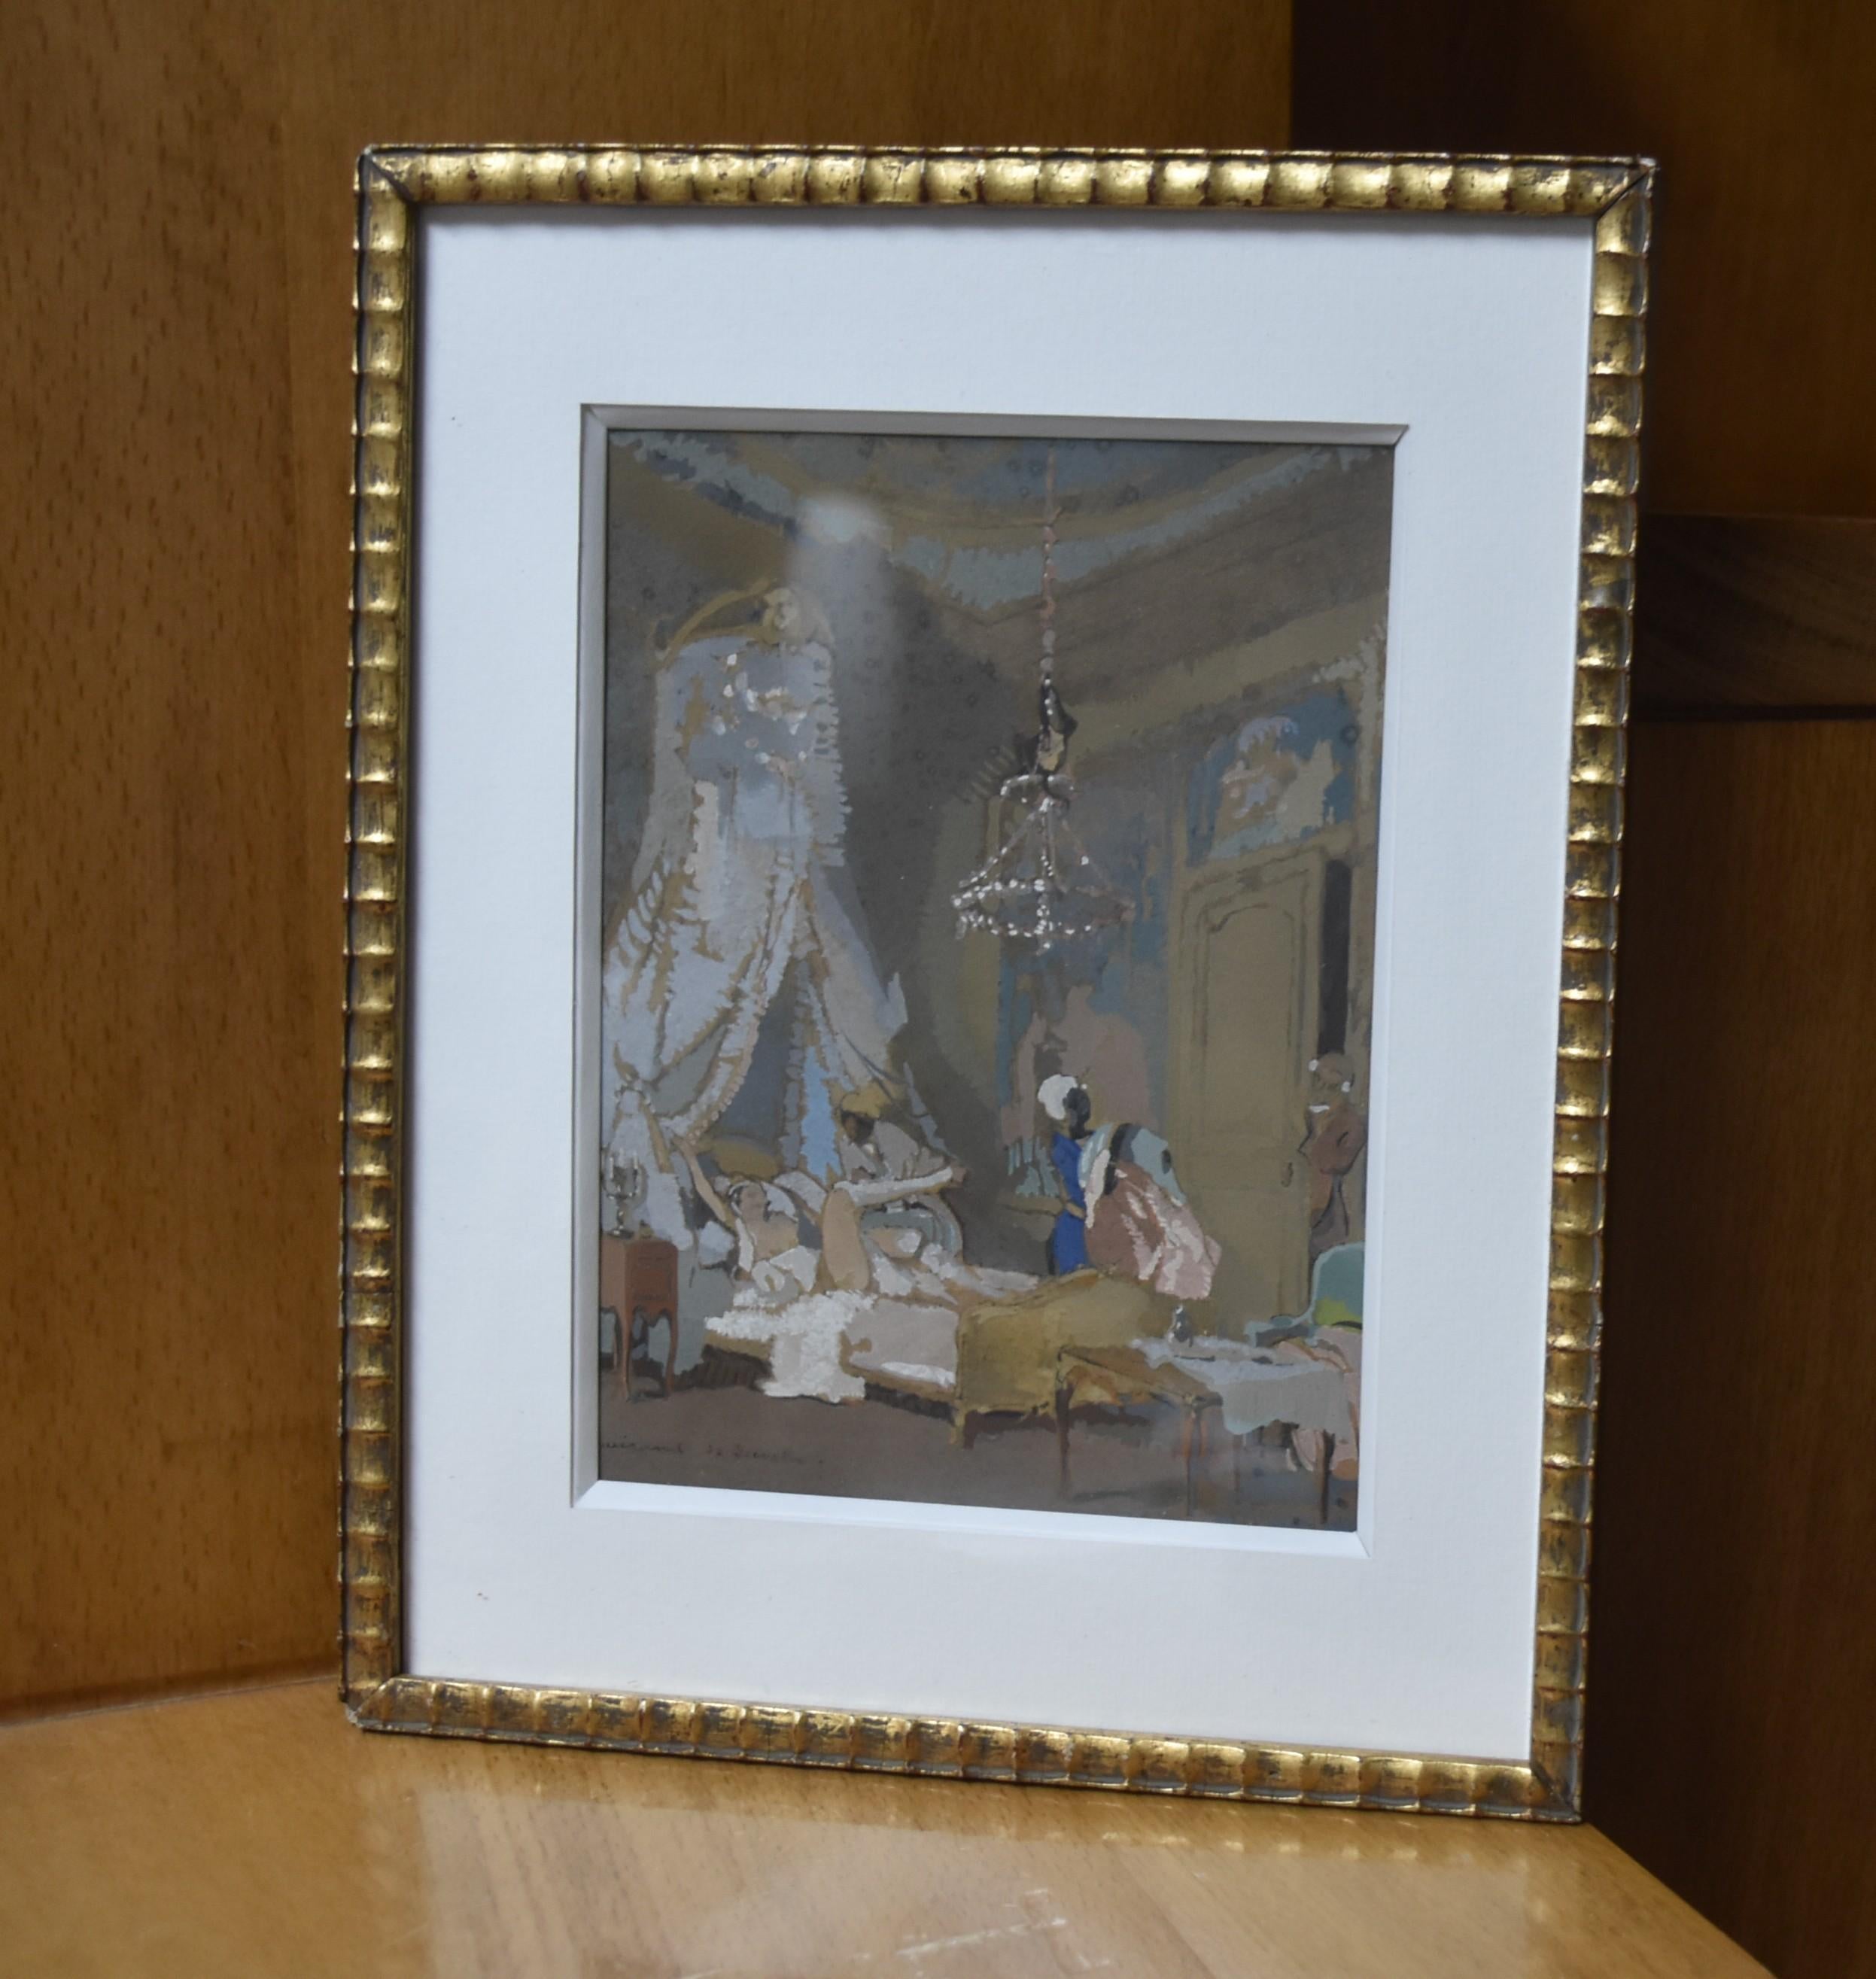 Guirand de Scevola  (1871-1950) Le lever, a galant scene, gouache - Gray Figurative Art by Lucien-Victor Guirand de Scévola